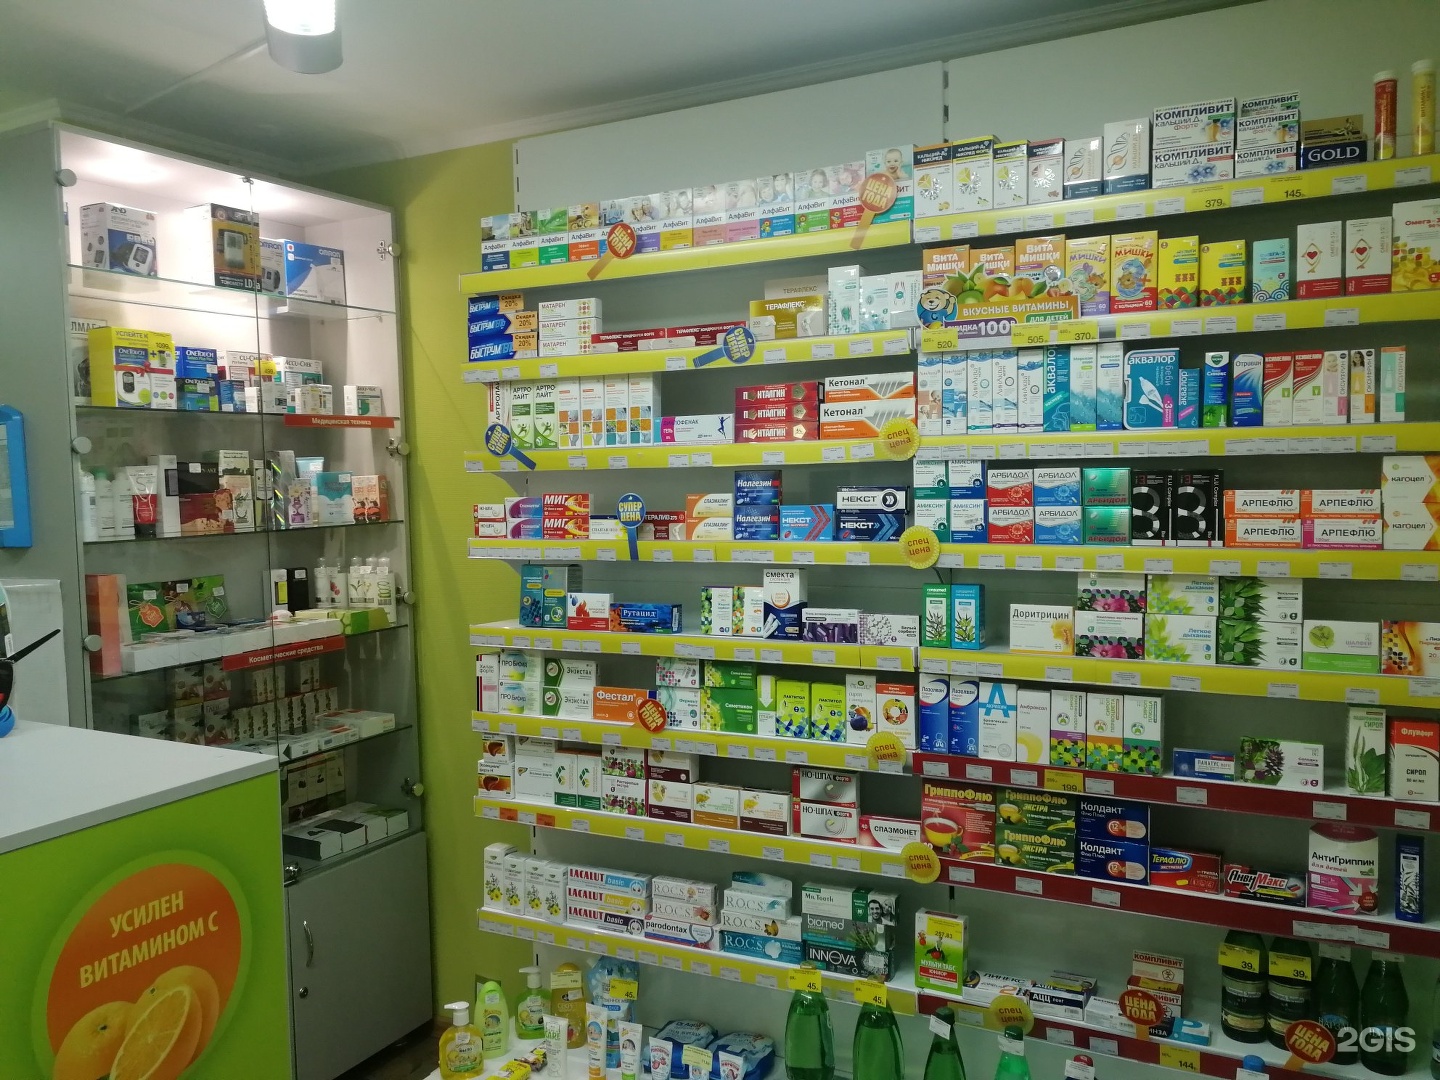 Аптека Фармакопейка Тюмень Цены